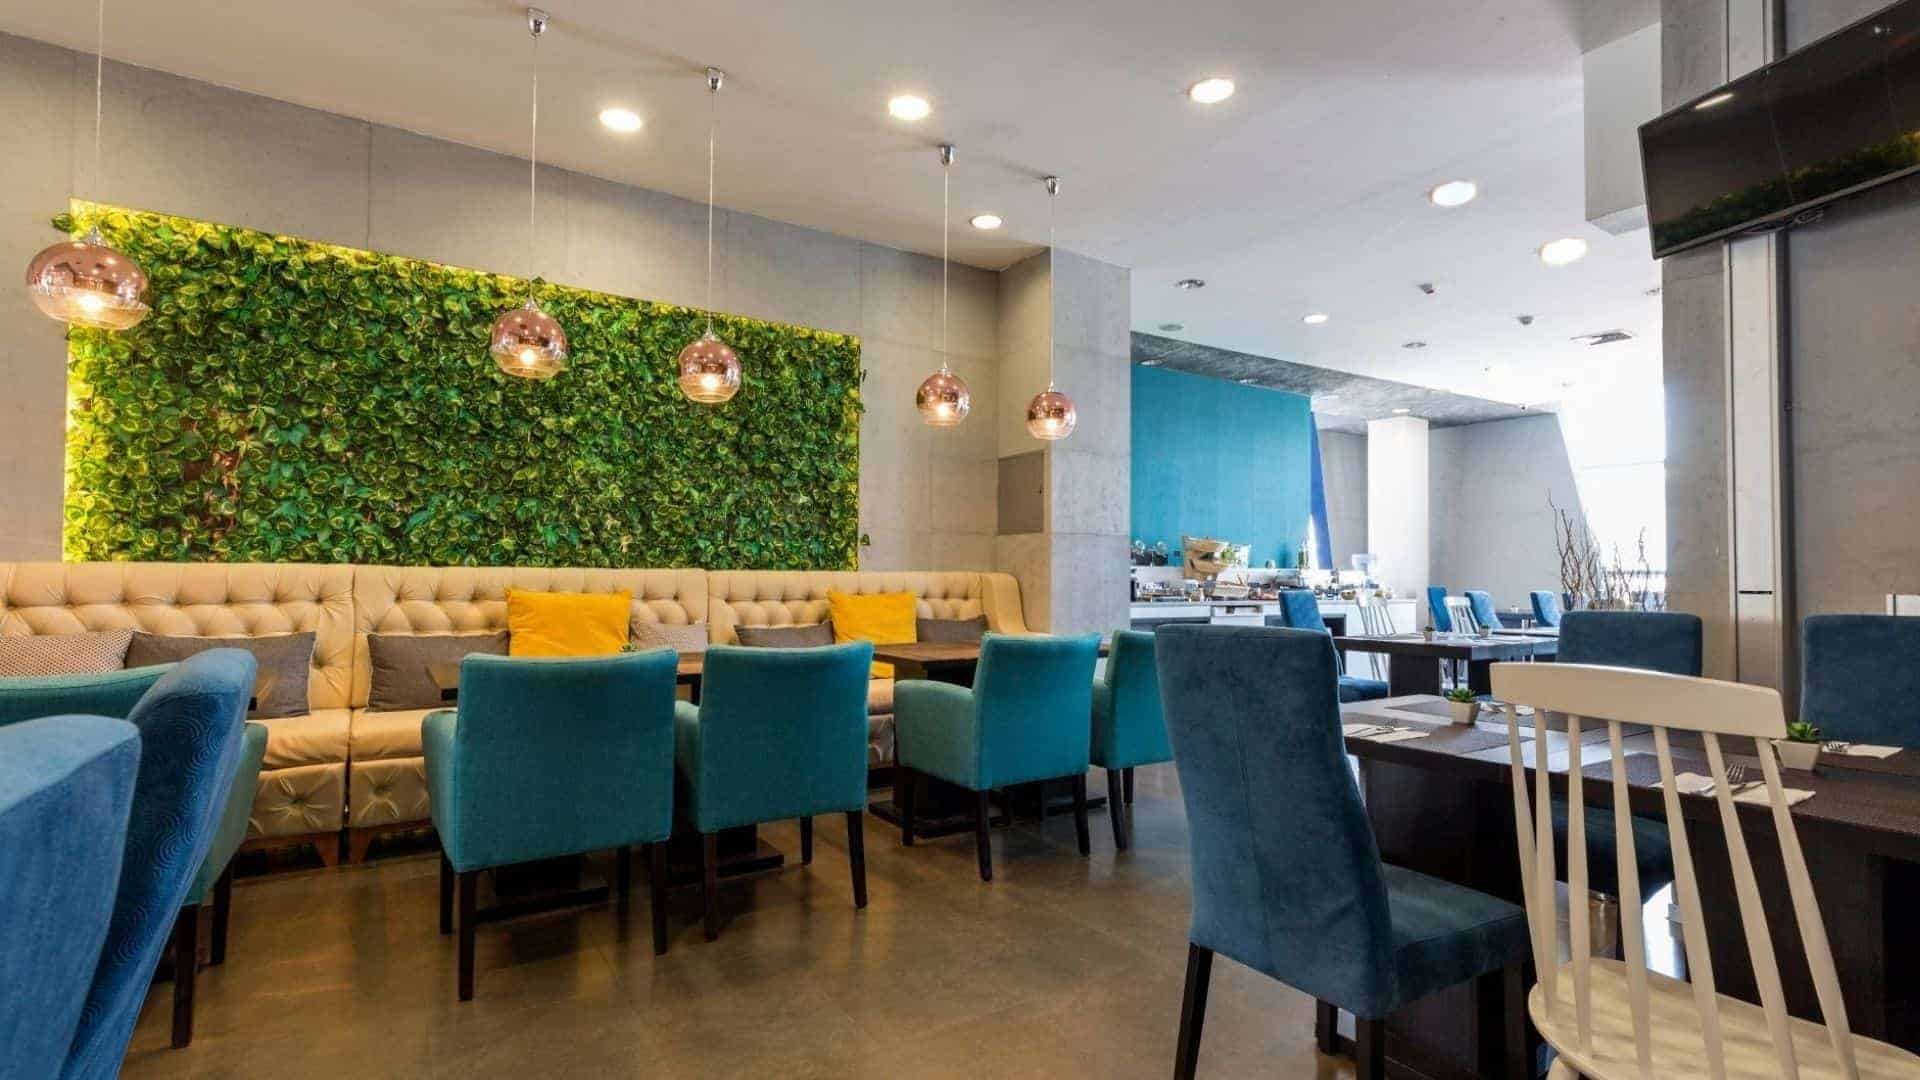 Cafe Interior design cost in MUMBAI India